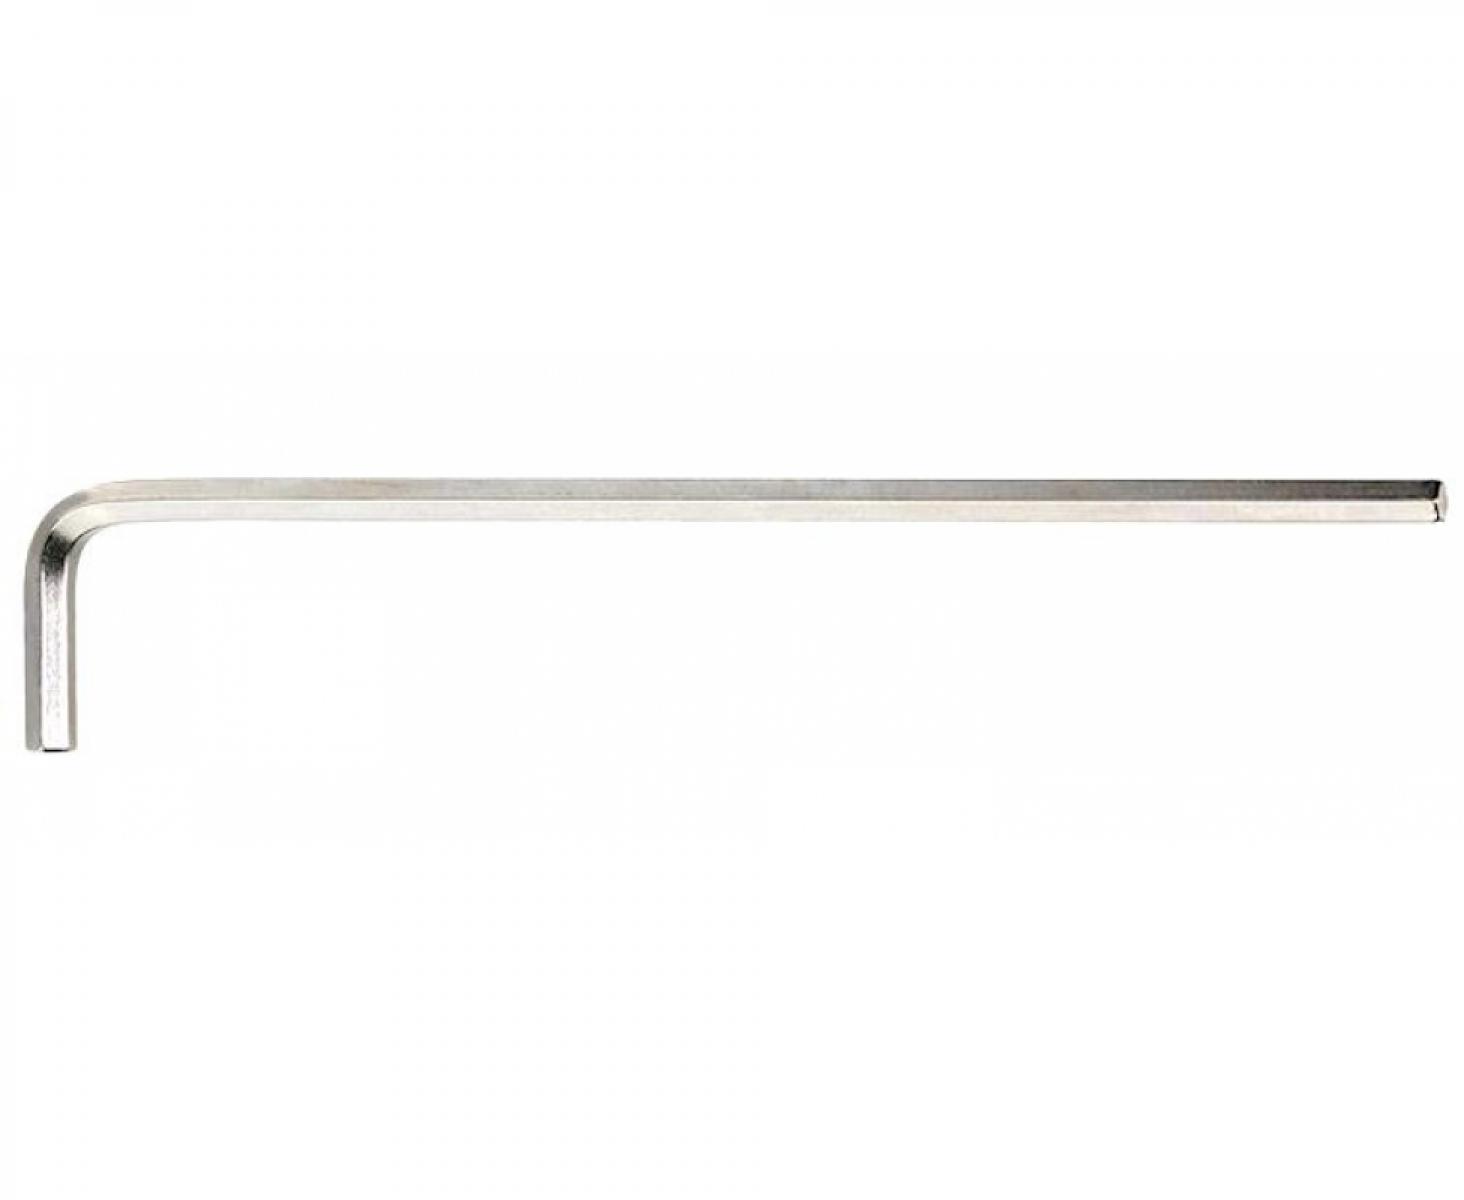 Штифтовый ключ HEX 4 мм длинный, метрический, никелированный 10765 Stahlwille 43210004